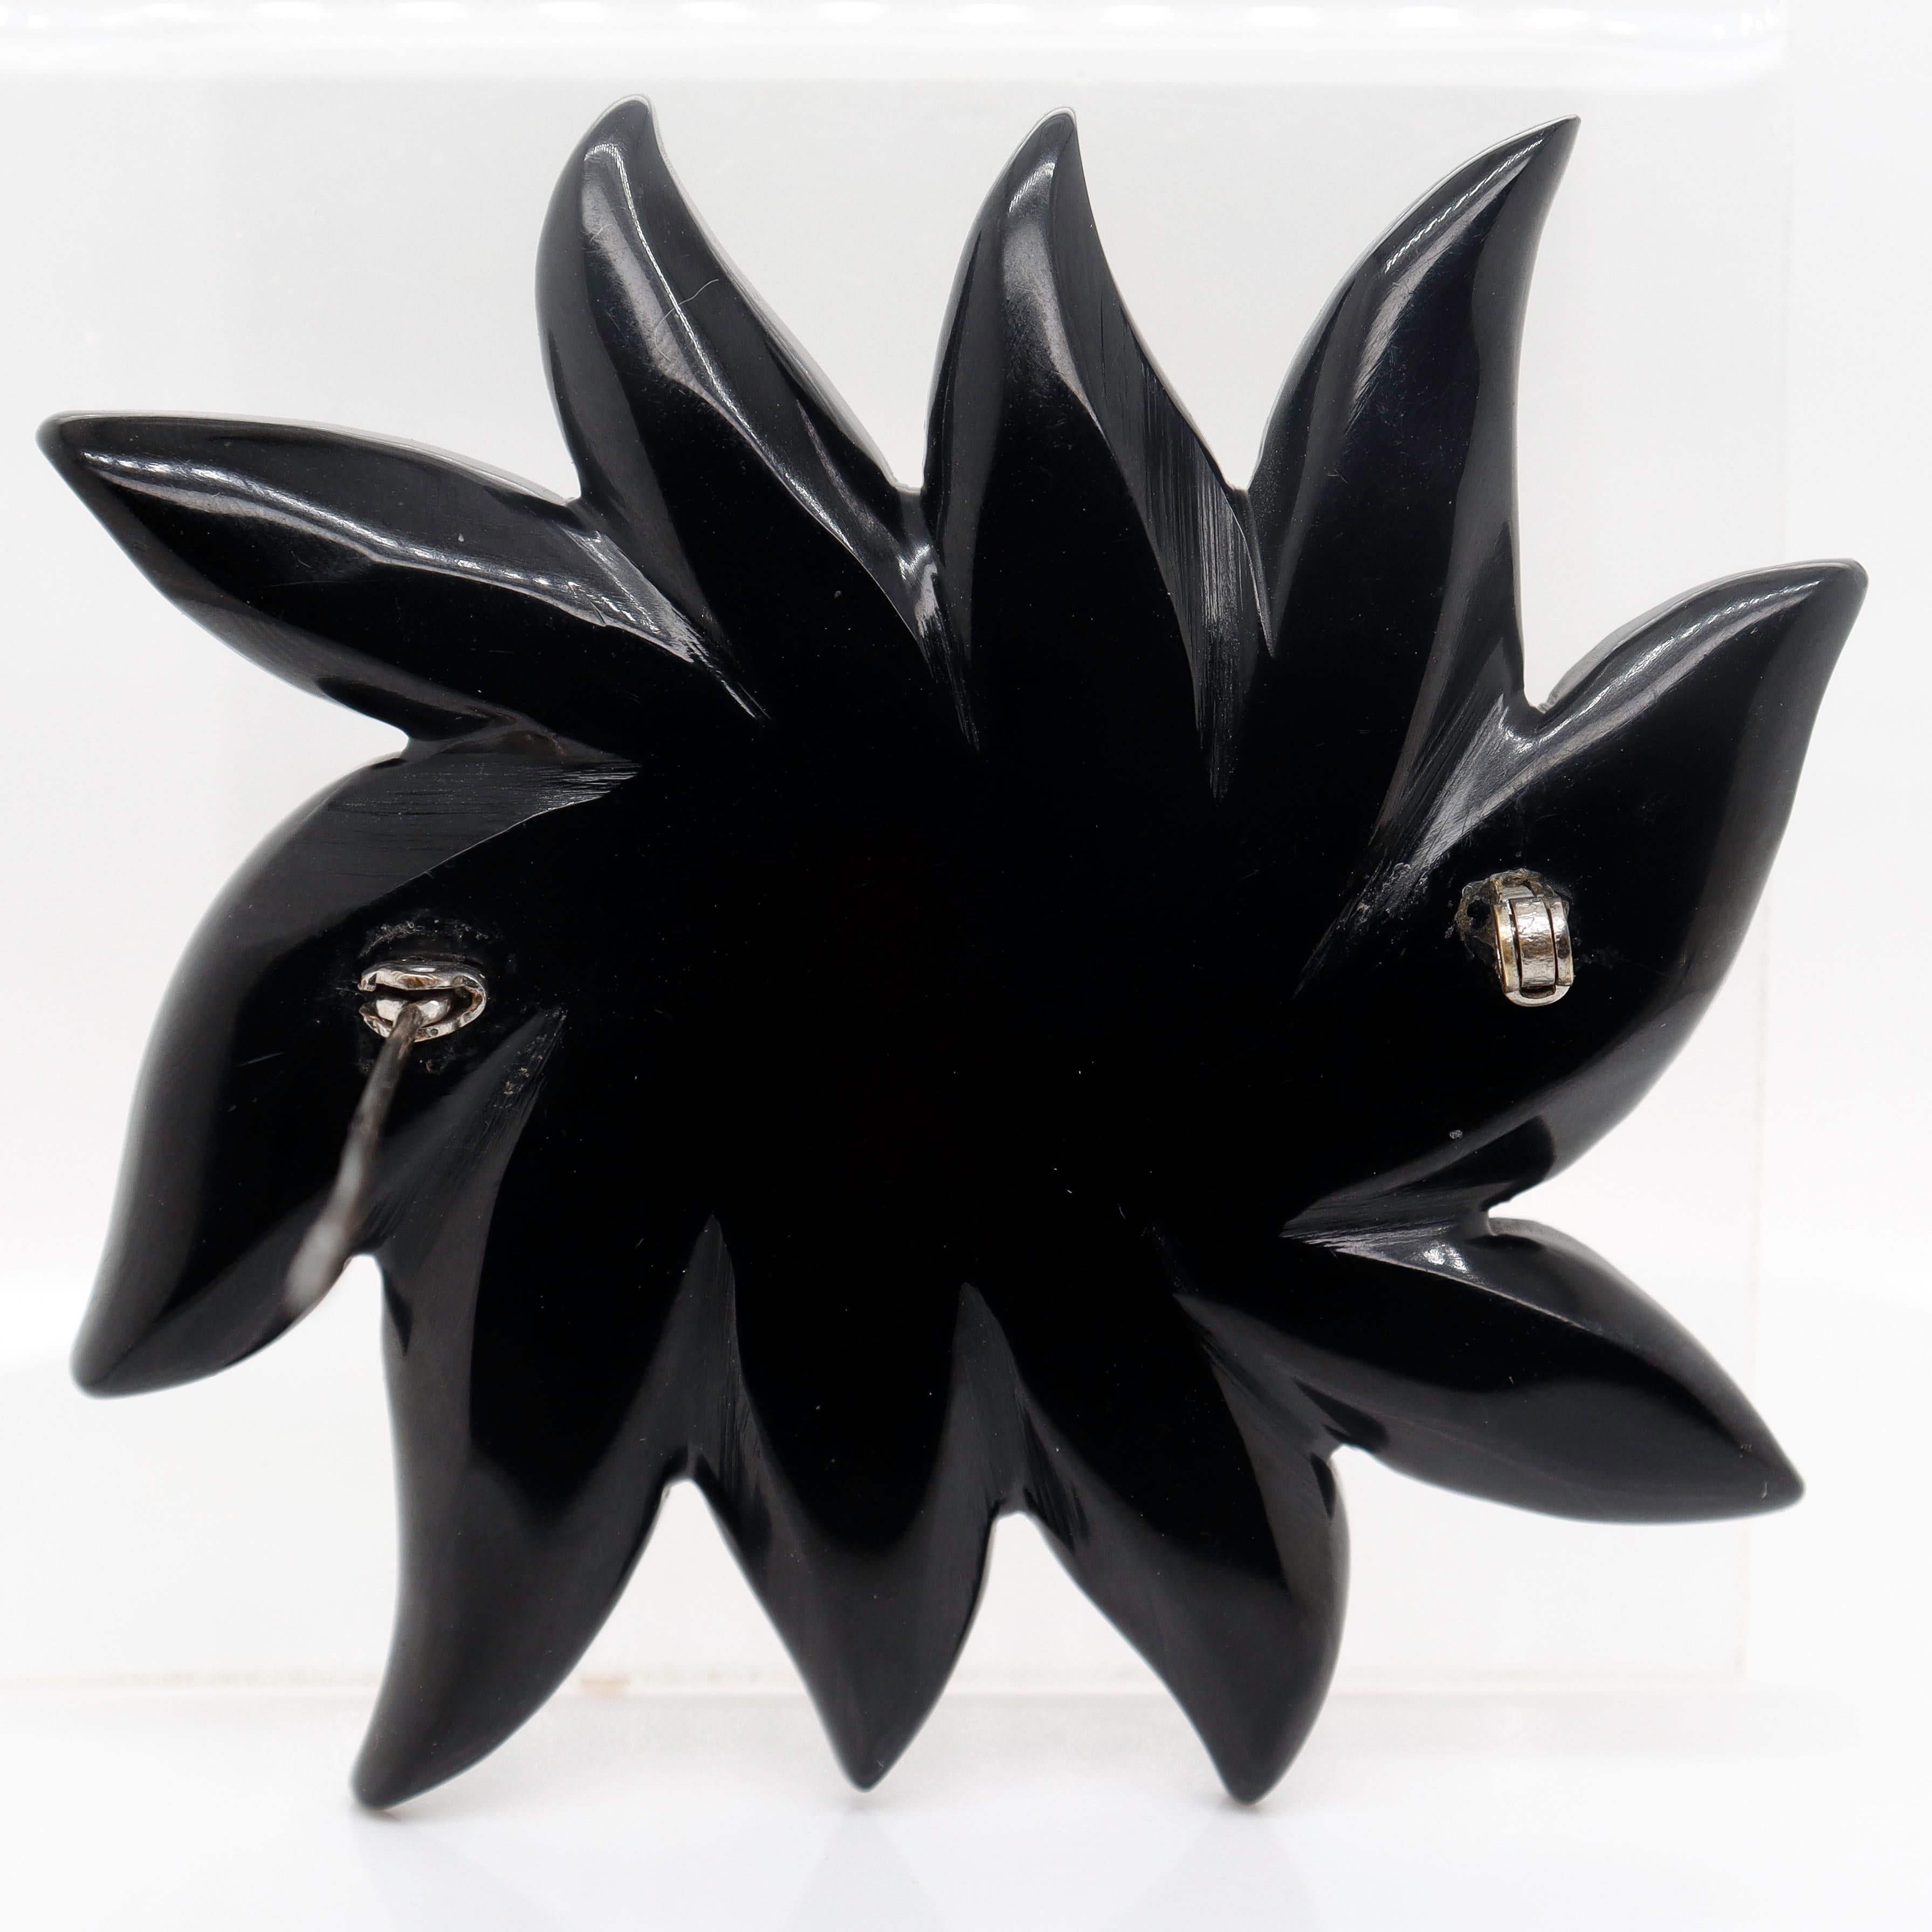 2-Color Black & Orange Bakelite Flower Brooch or Pin with Rhinestones For Sale 1